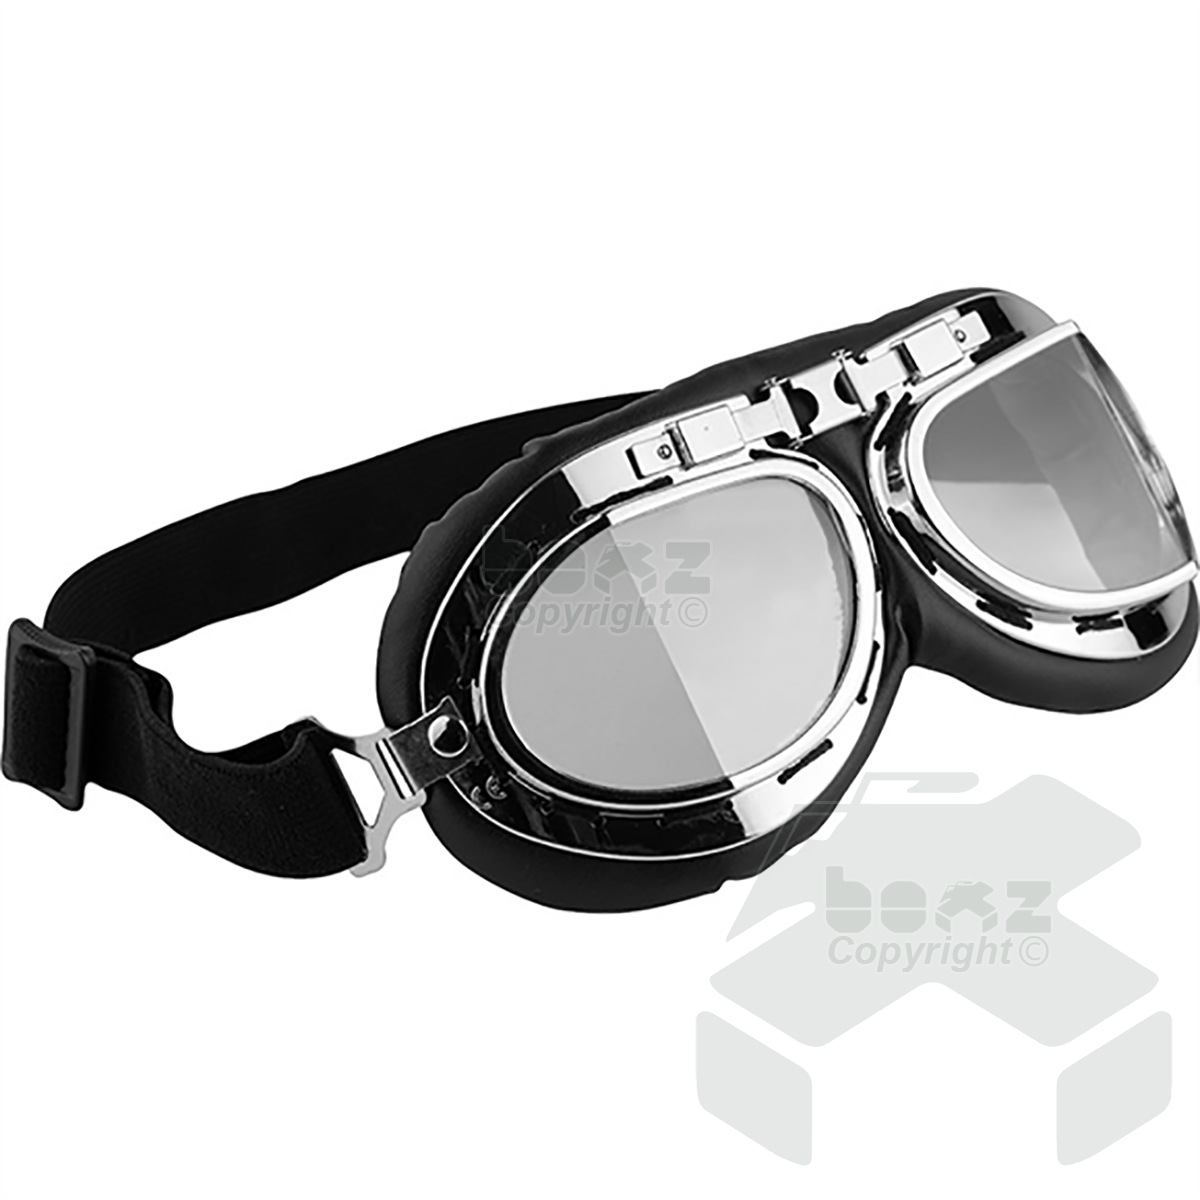 Mil-Com Flyers Goggles